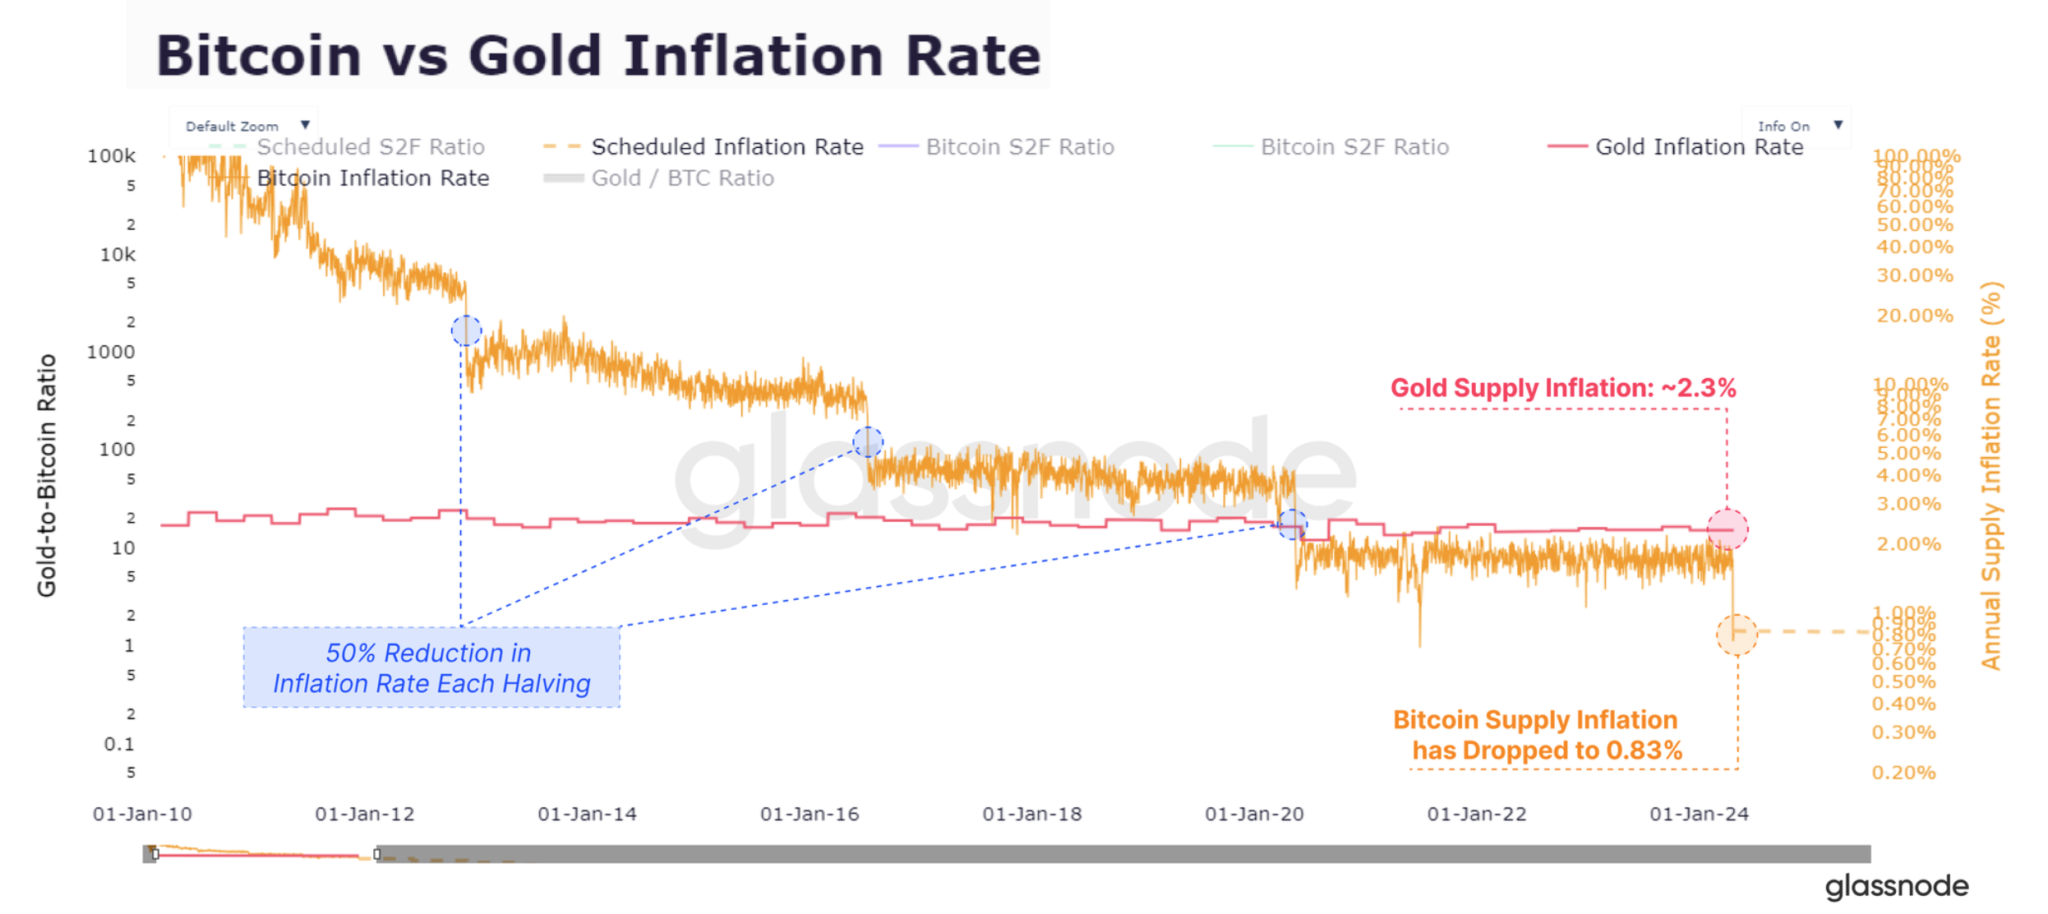 Glassnode：比特币减半后通膨率显著低于黄金！有何影响？